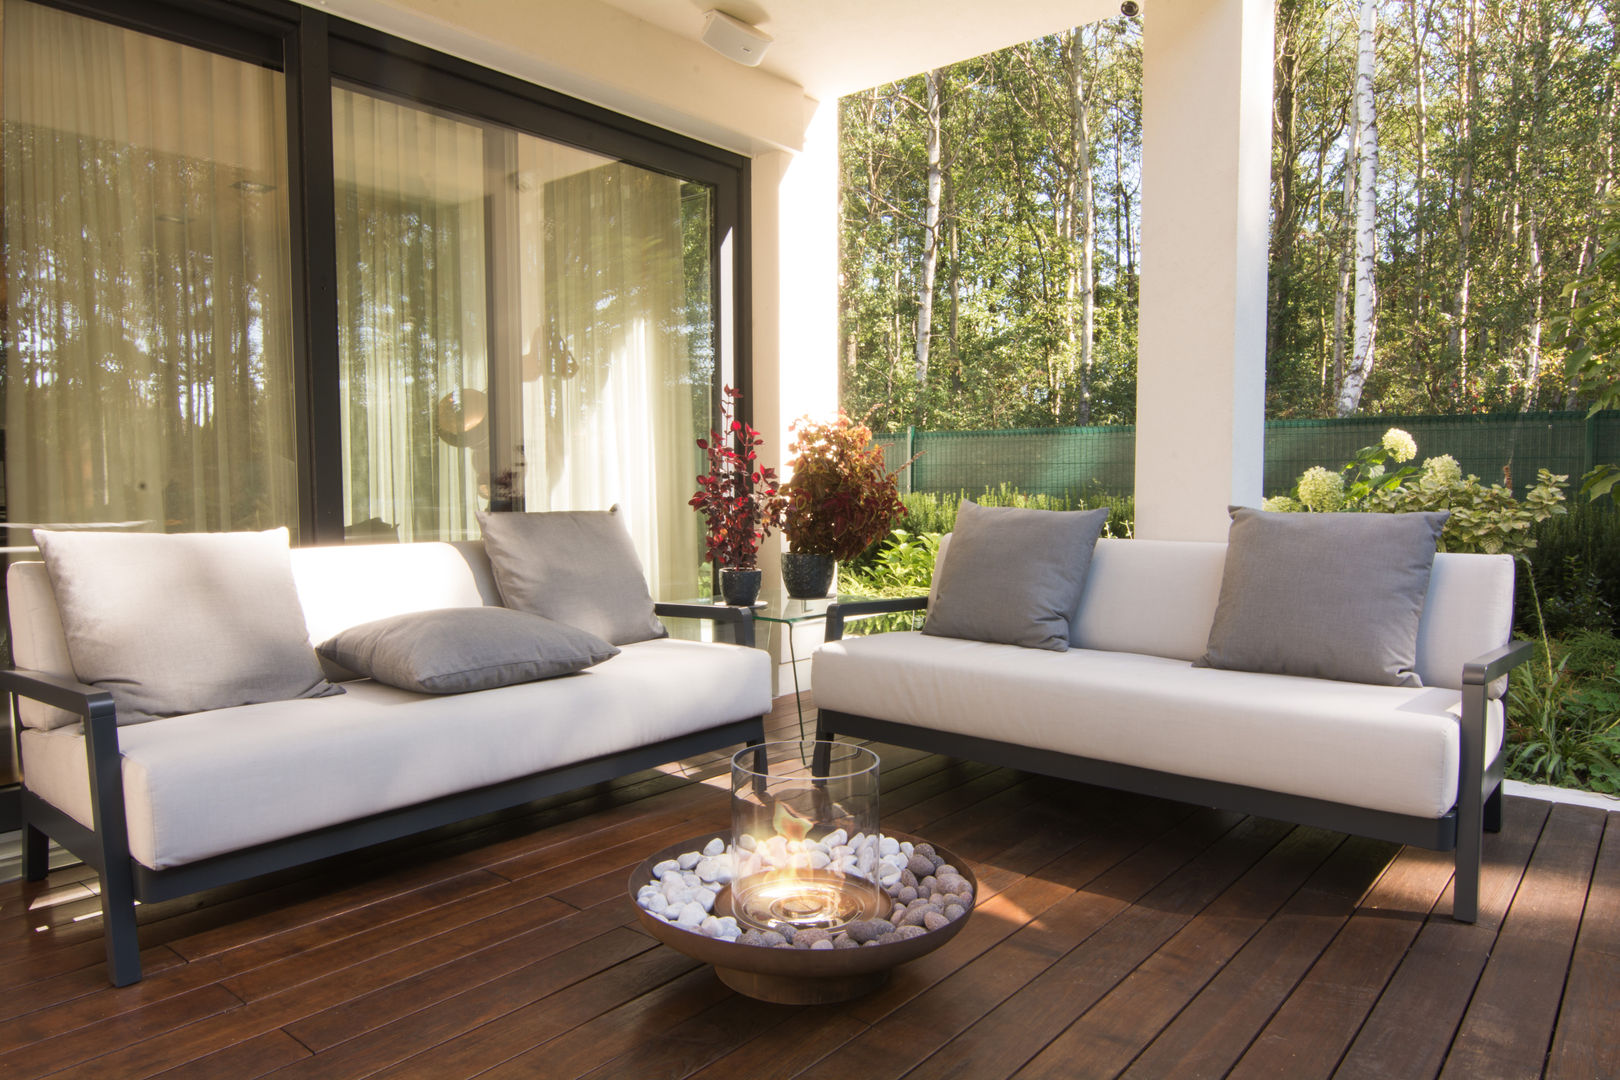 Fabricámos lareiras para a sua casa de sonho!, Clearfire - Lareiras Etanol Clearfire - Lareiras Etanol Modern living room